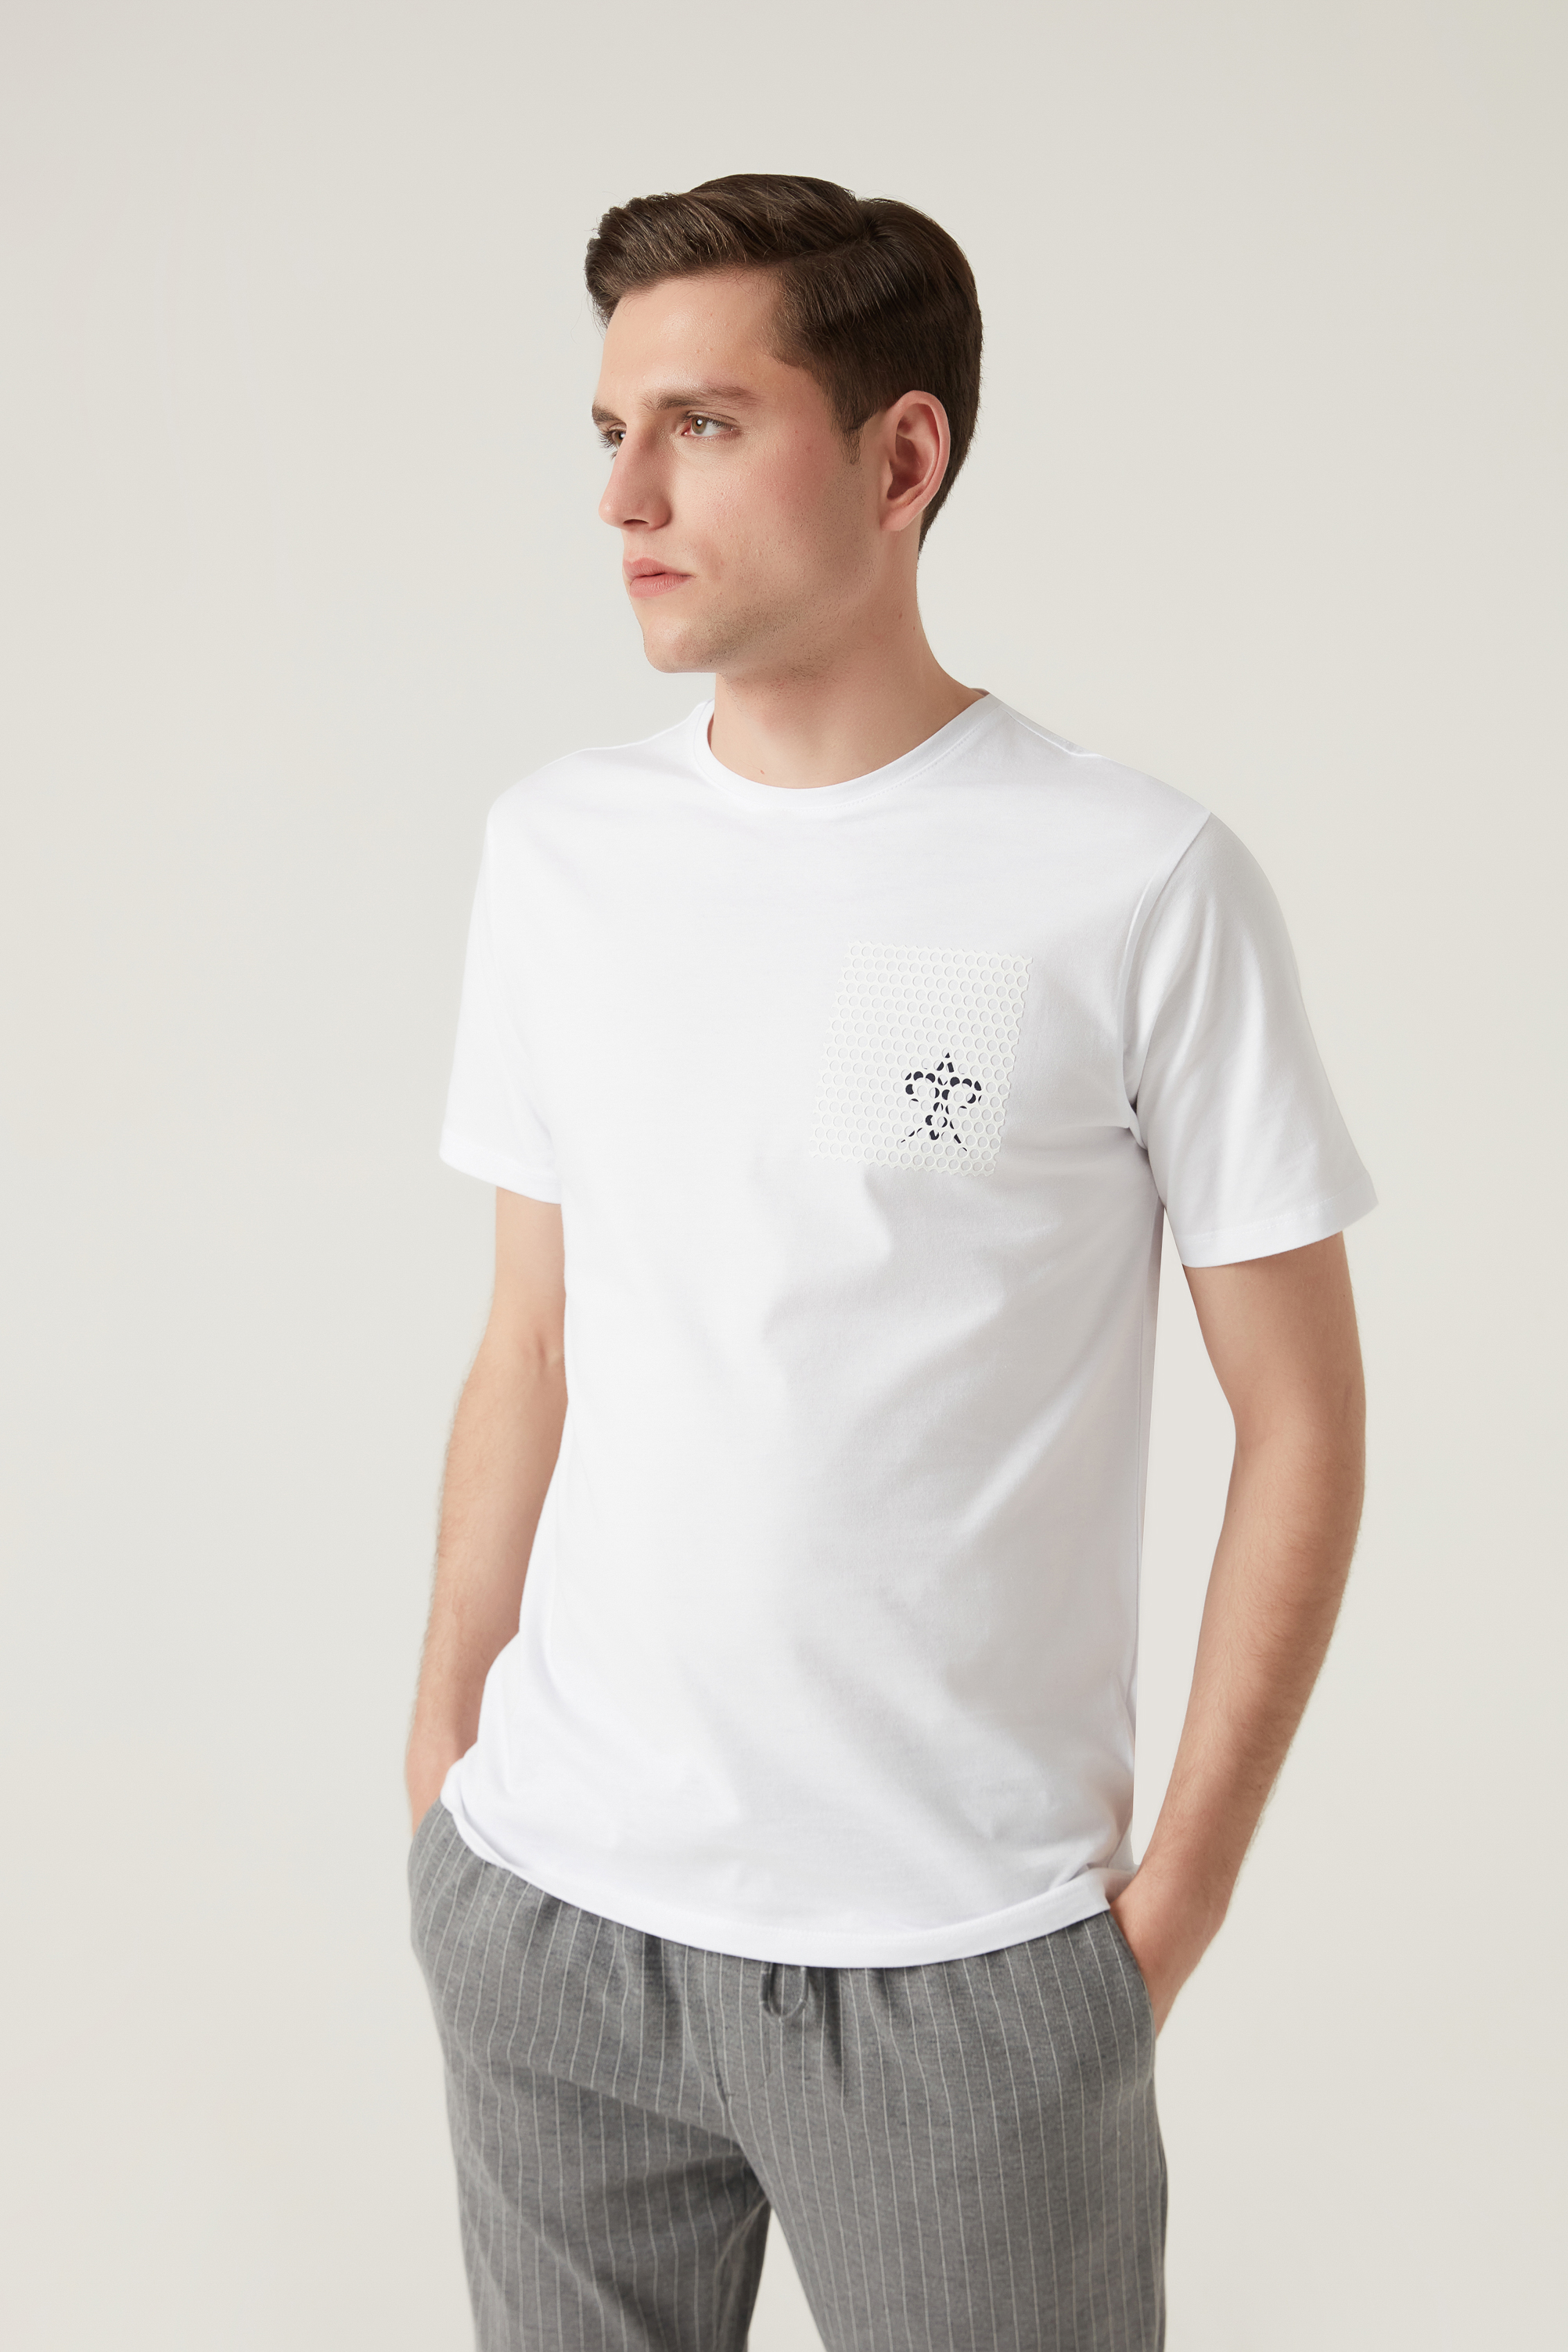 Damat Tween Damat Beyaz Çizgili Baskılı T-shirt. 2